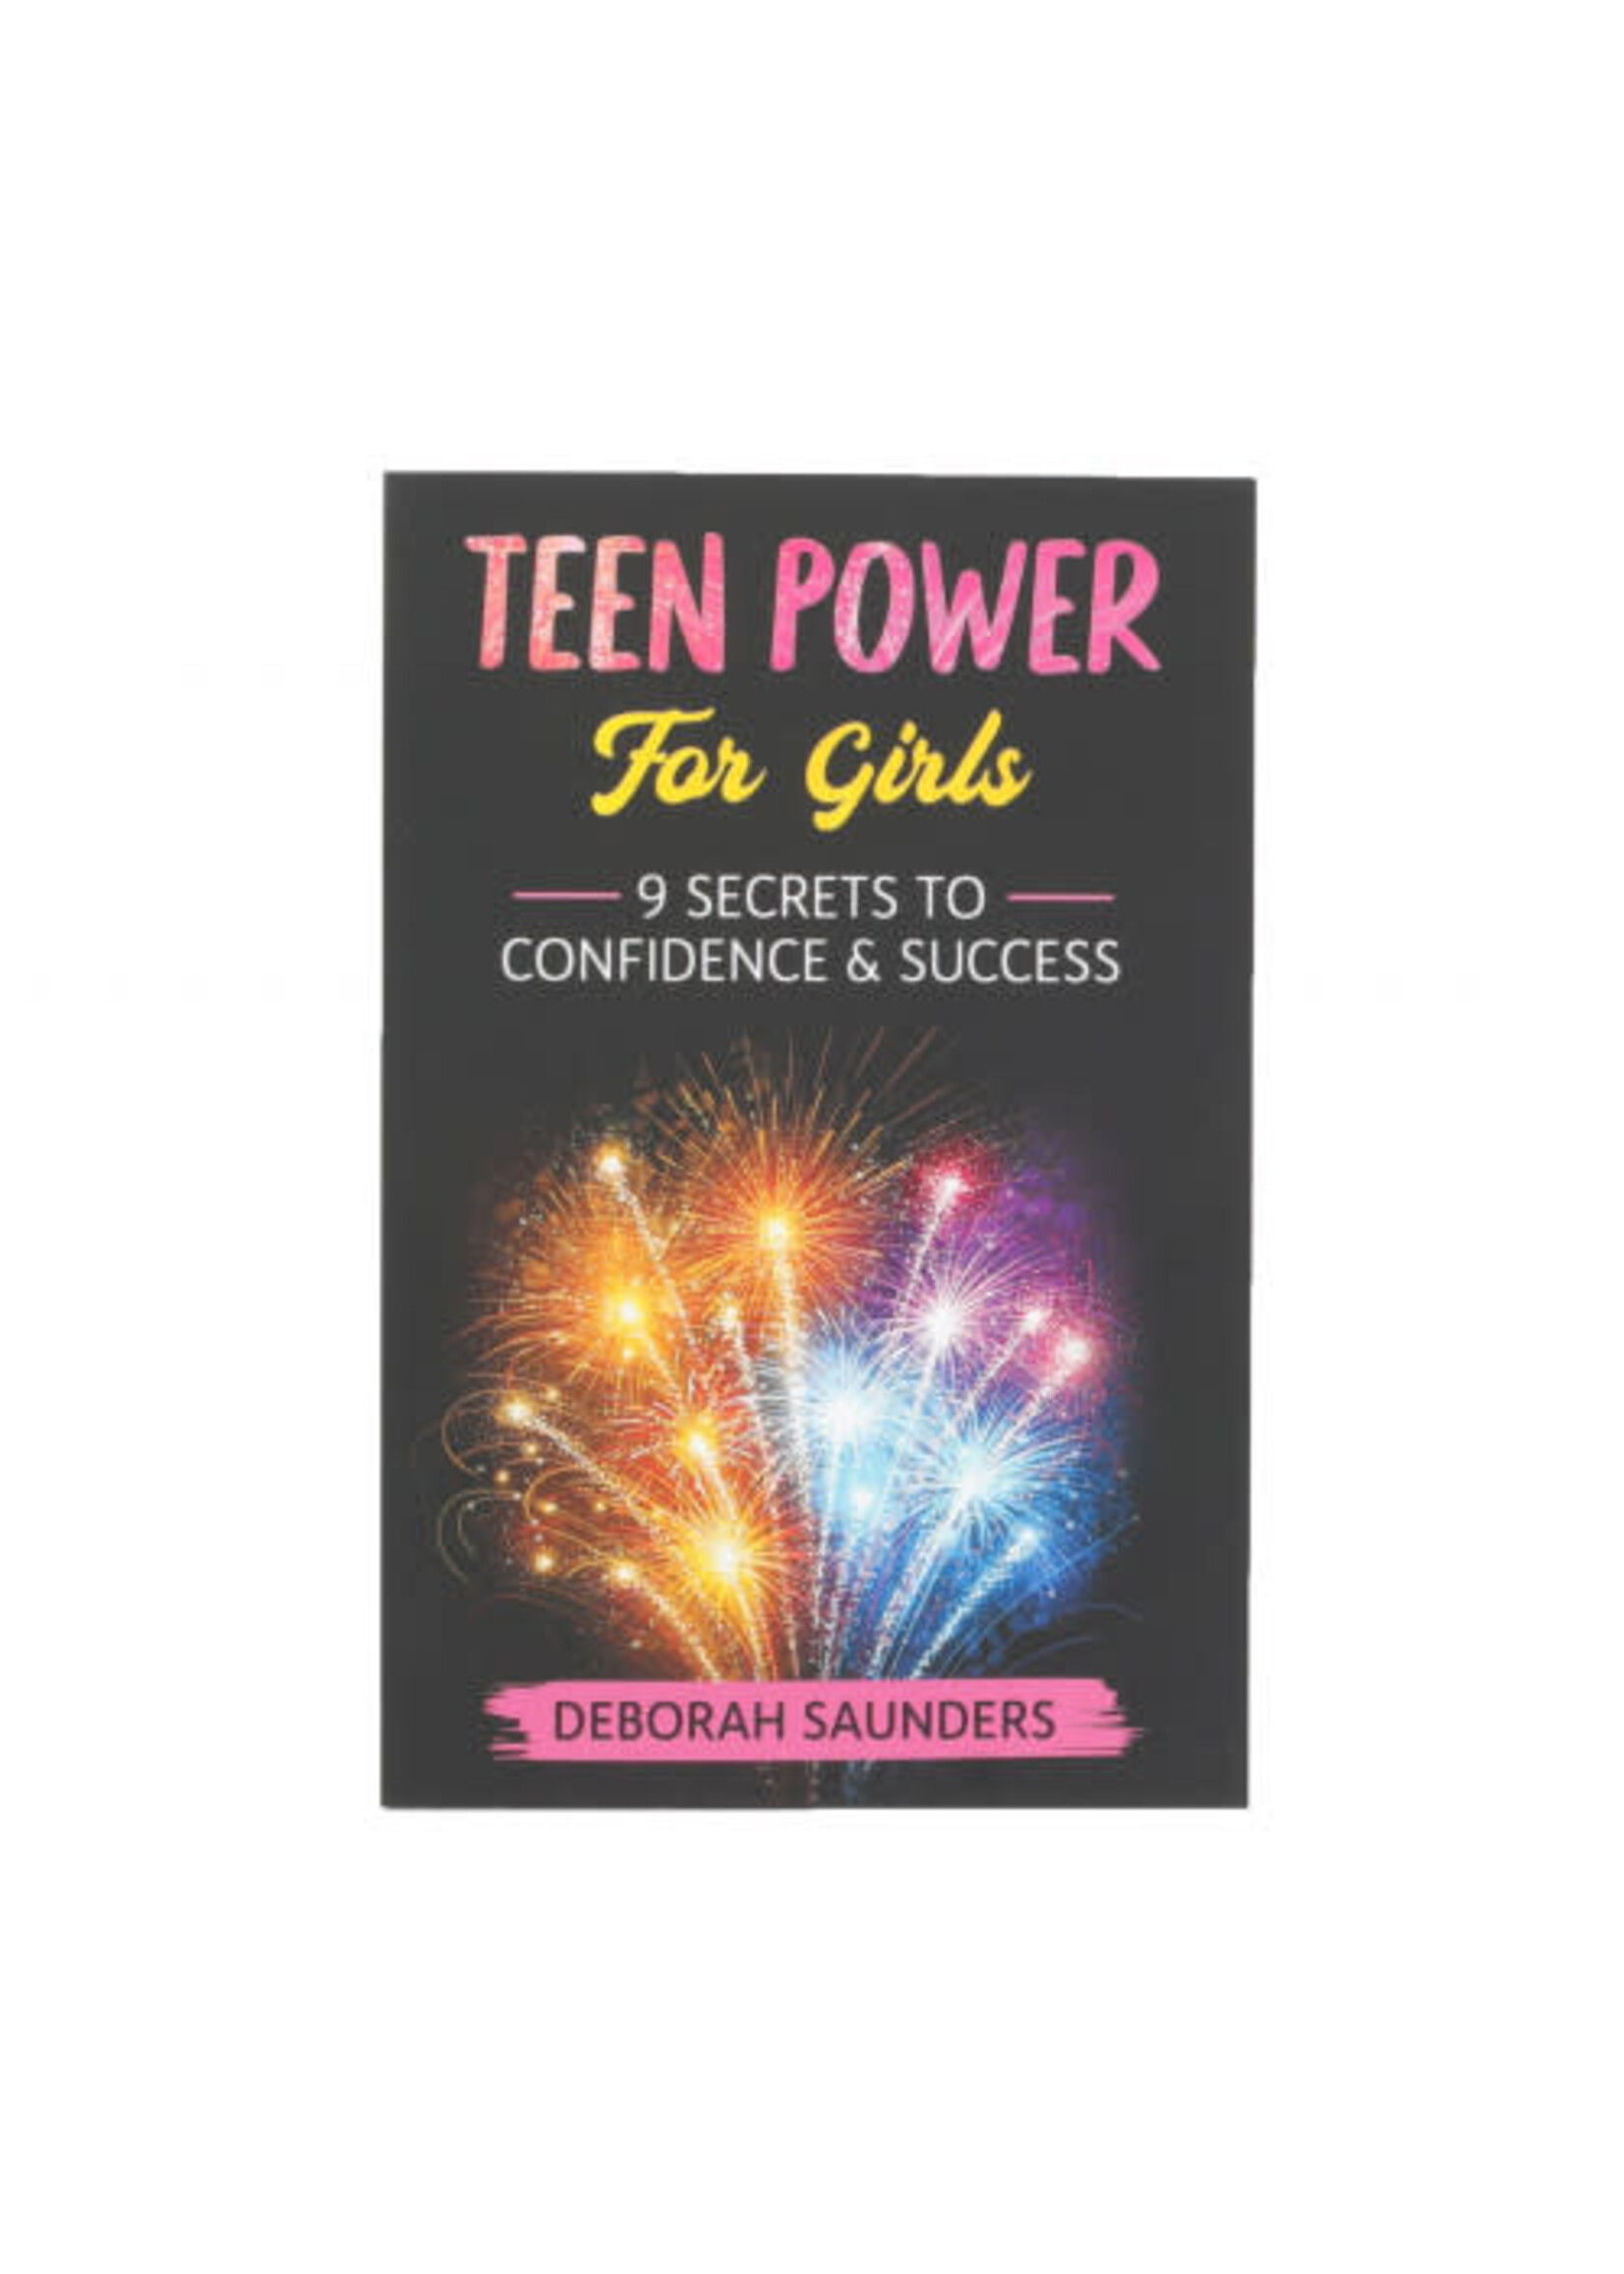 TEEN POWER FOR GIRLS